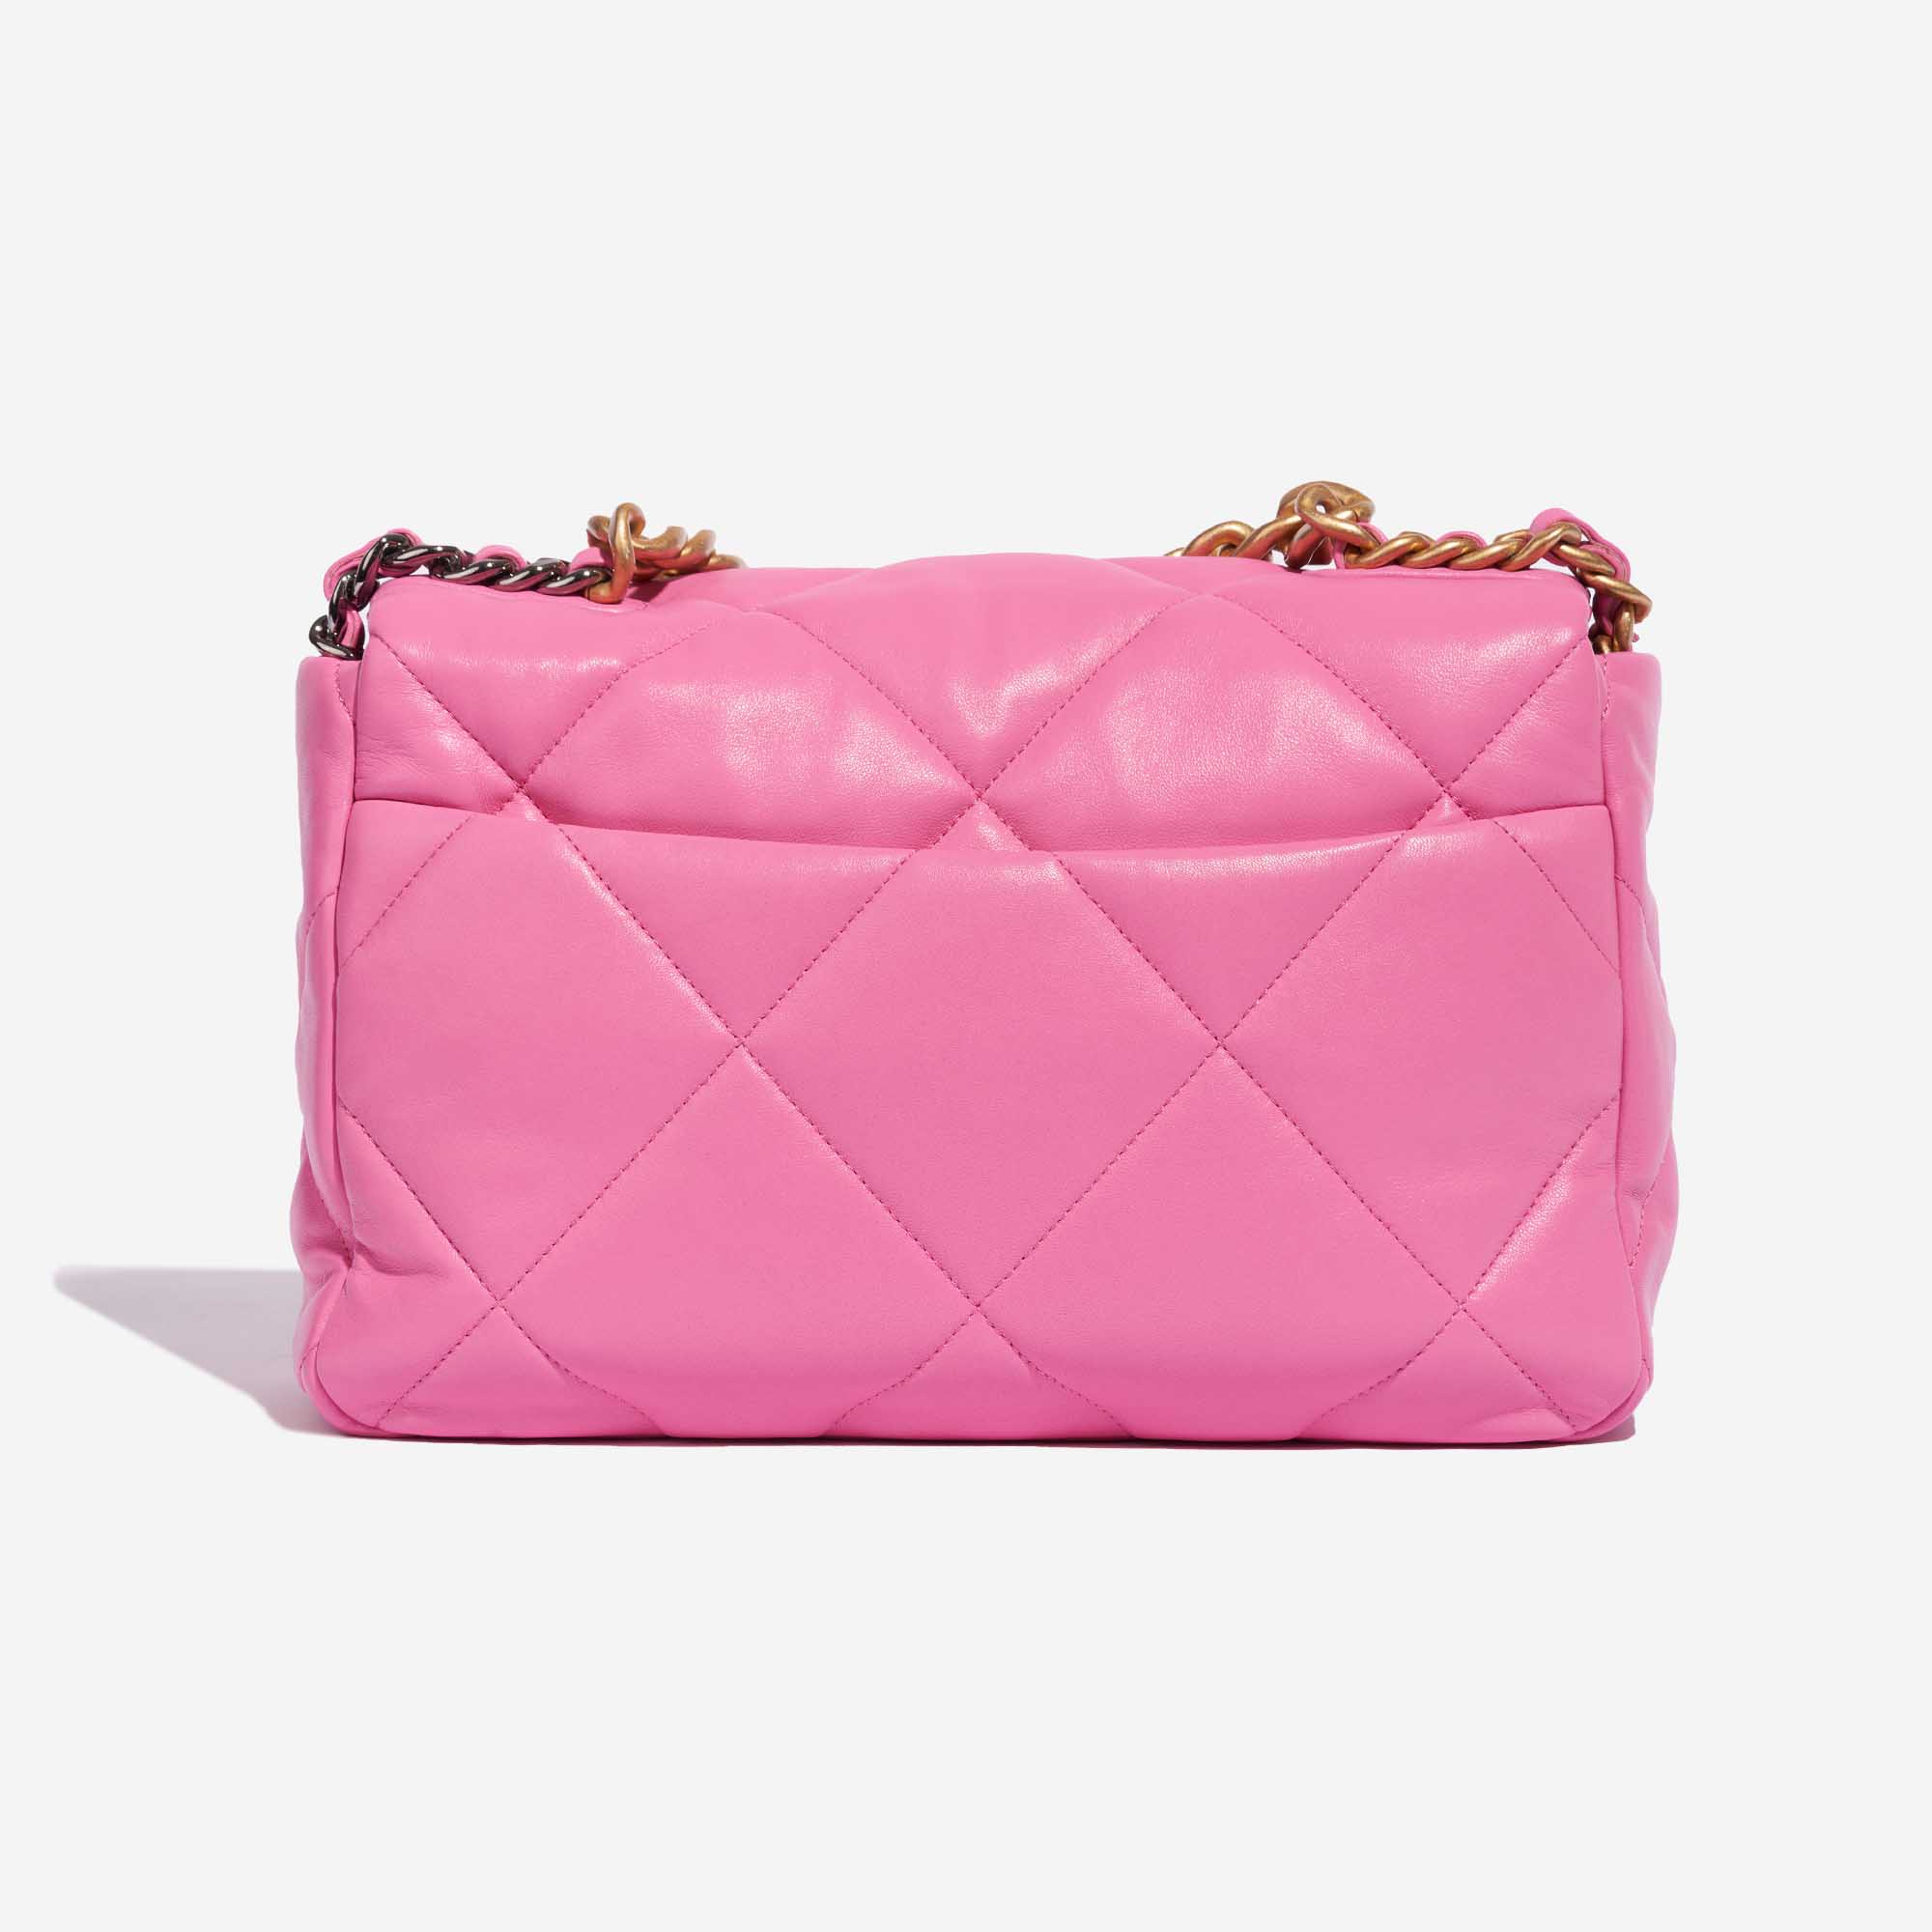 Pre-owned Chanel bag 19 Large Flap Bag Lamb Rose Rose Back | Sell your designer bag on Saclab.com